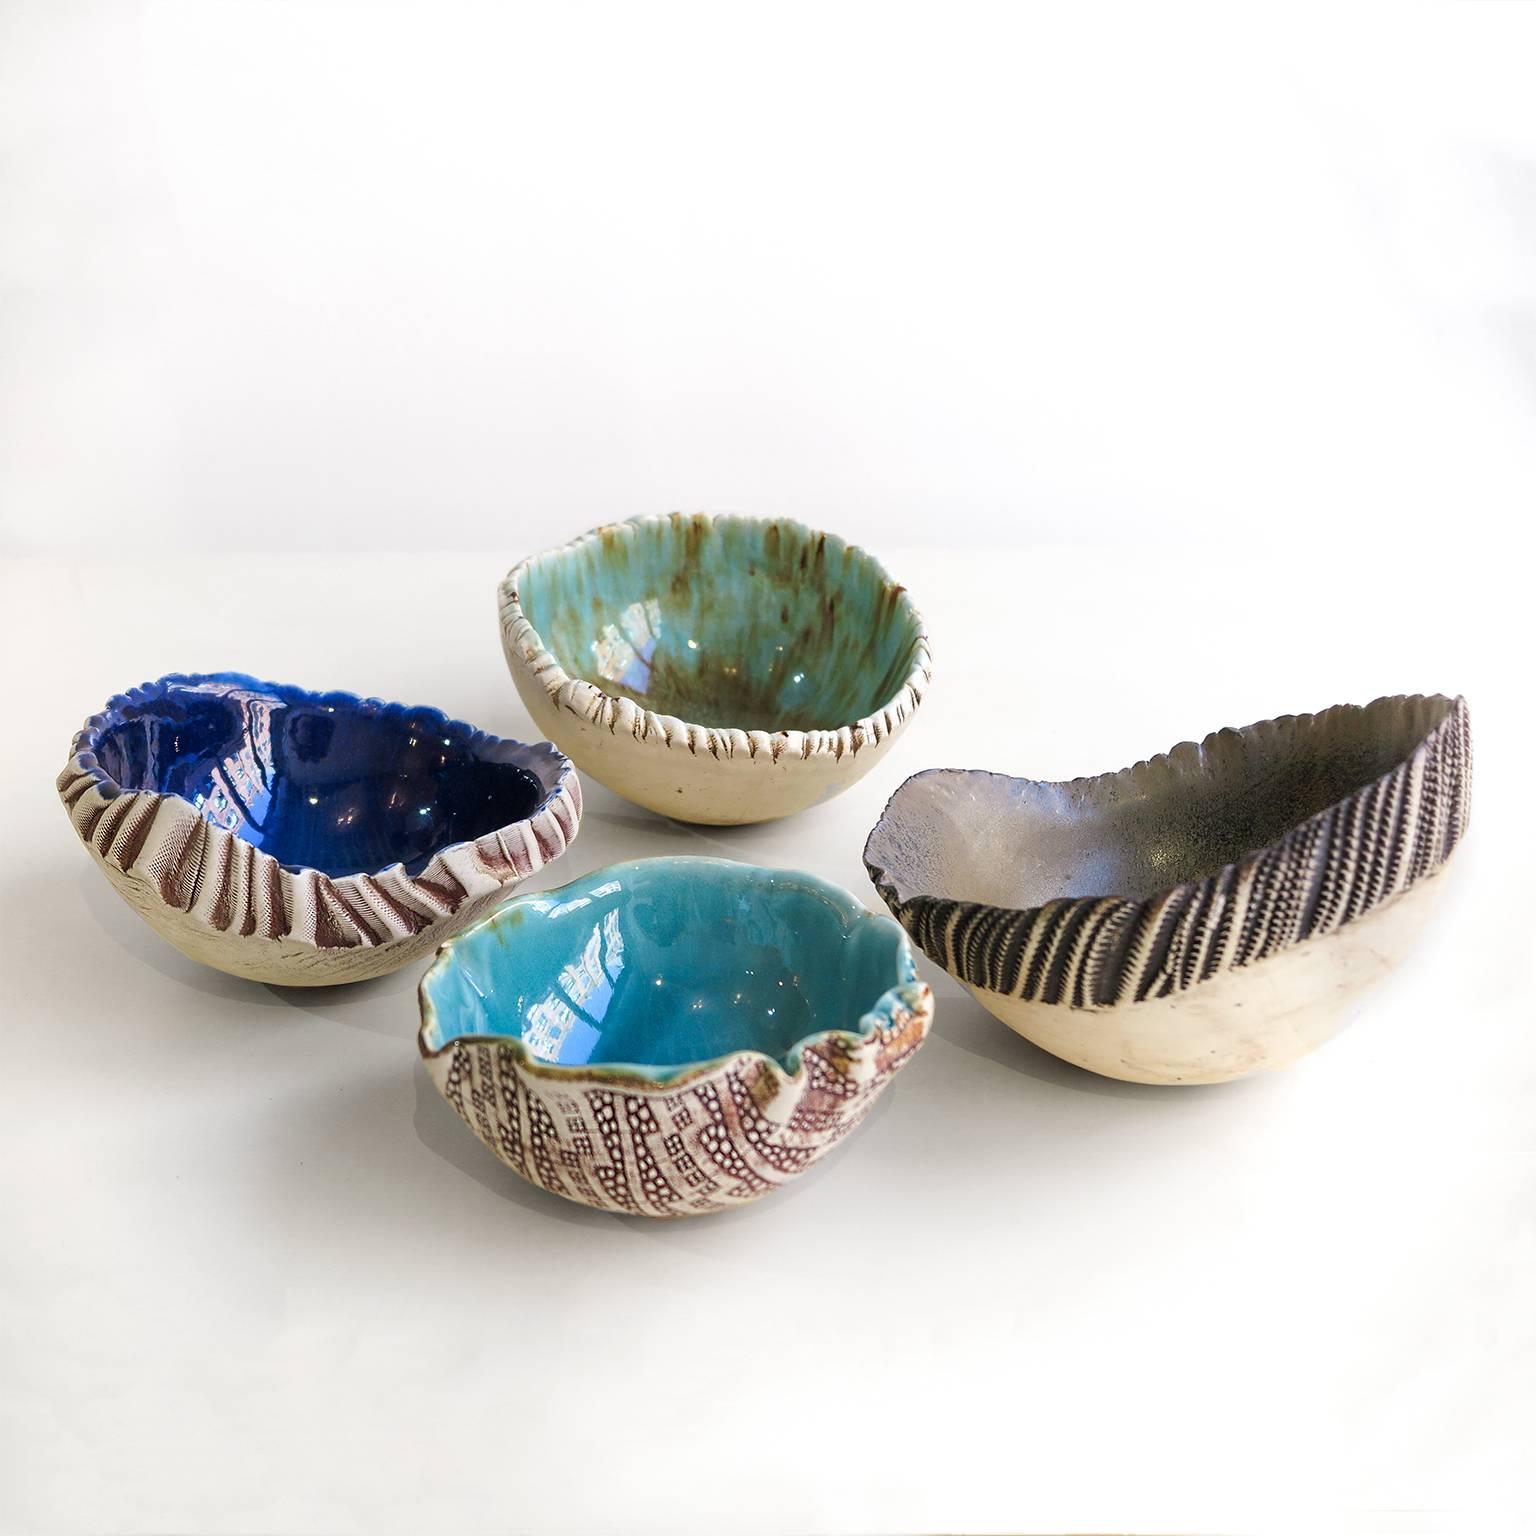 Three Scandinavian Modern Hand Built and Glazed Bowls by Artist Bengt Berglund 1